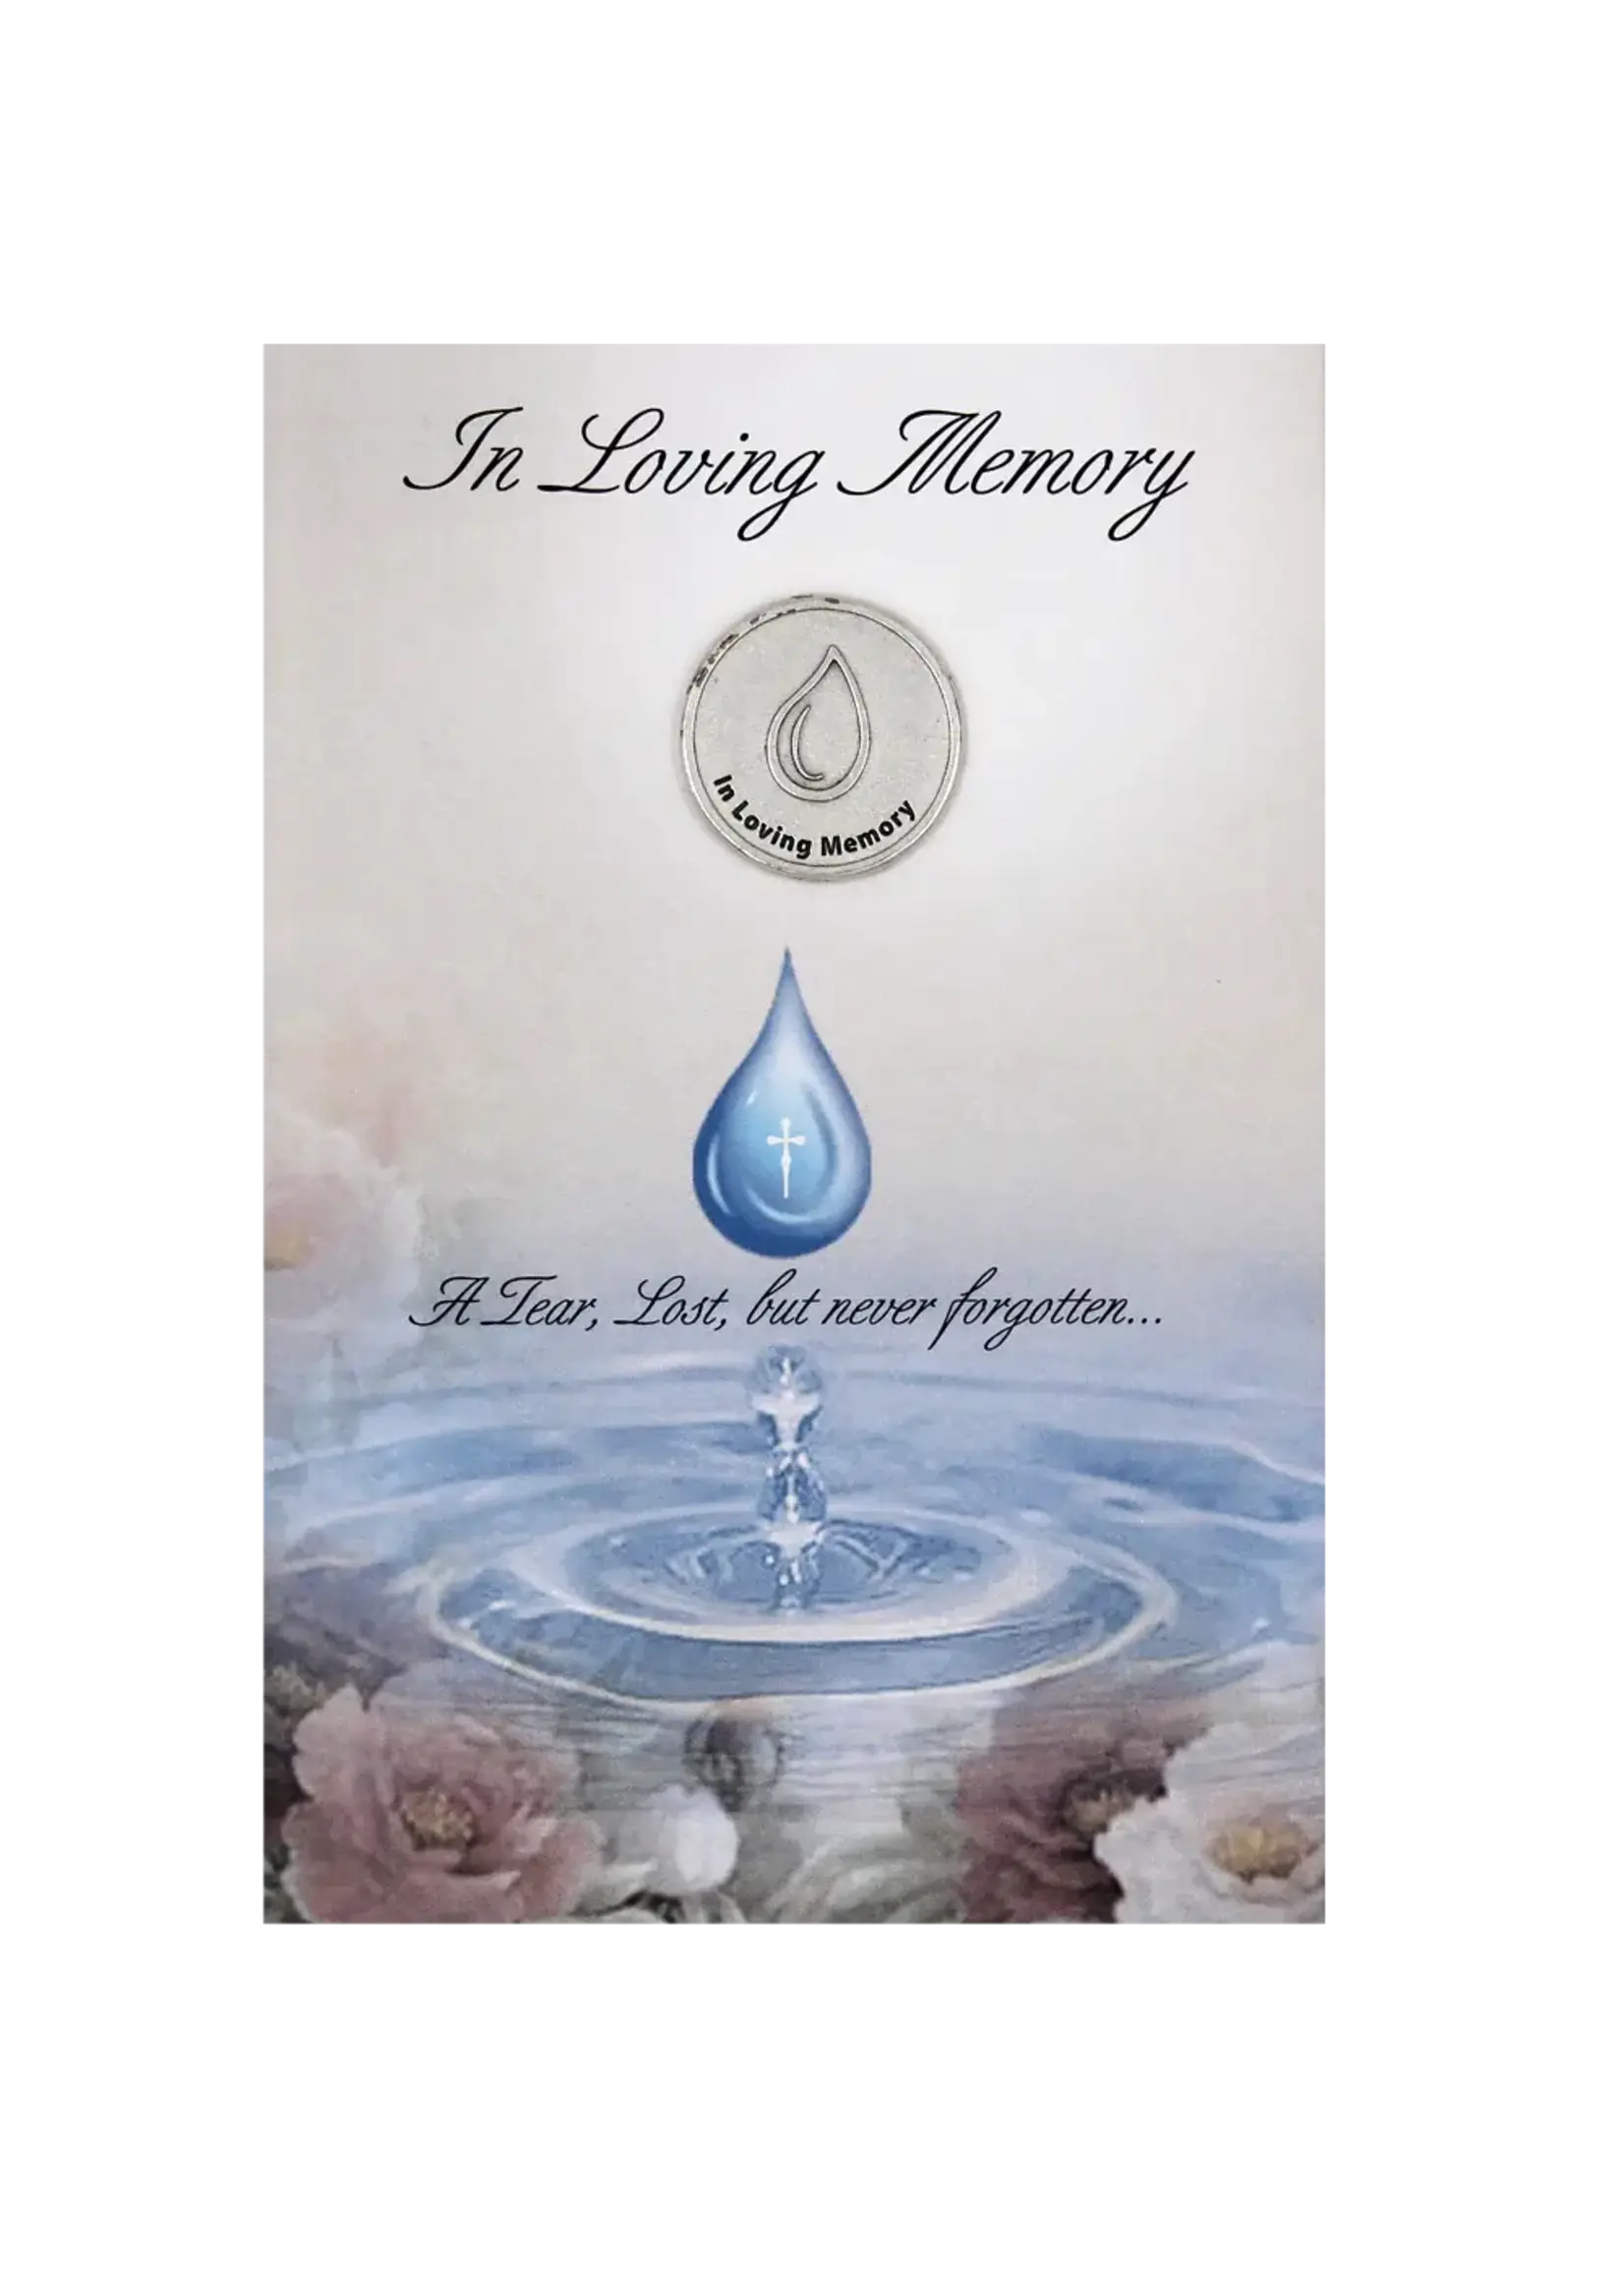 In Loving Memory Greeting Card with Memorial PrayerToken